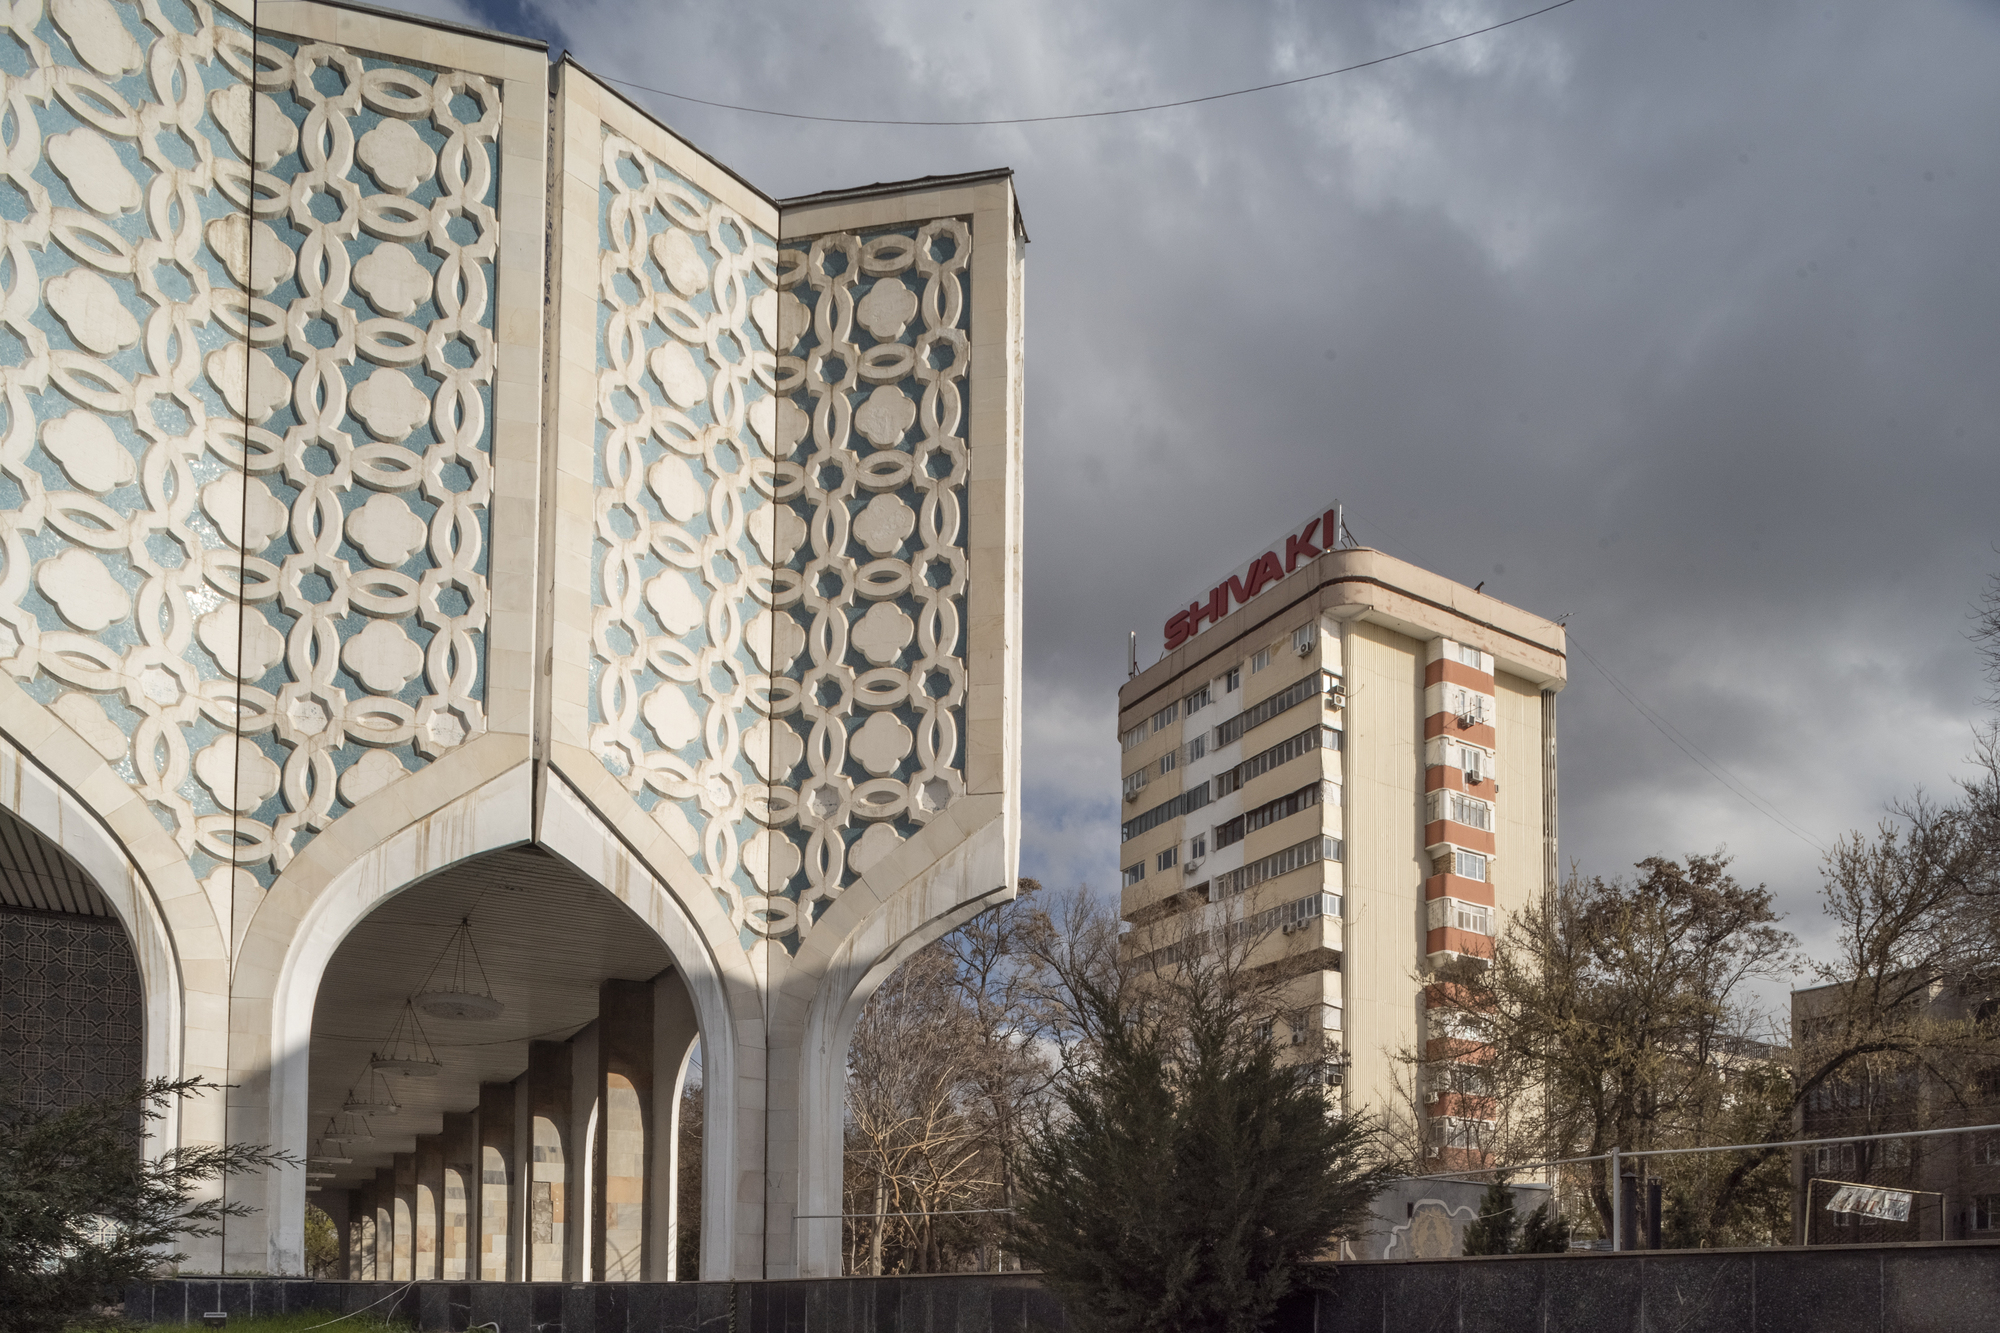 Ташкентский модернизм XX/XXI: проект исследования и сохранения архитектурного наследия Узбекистана